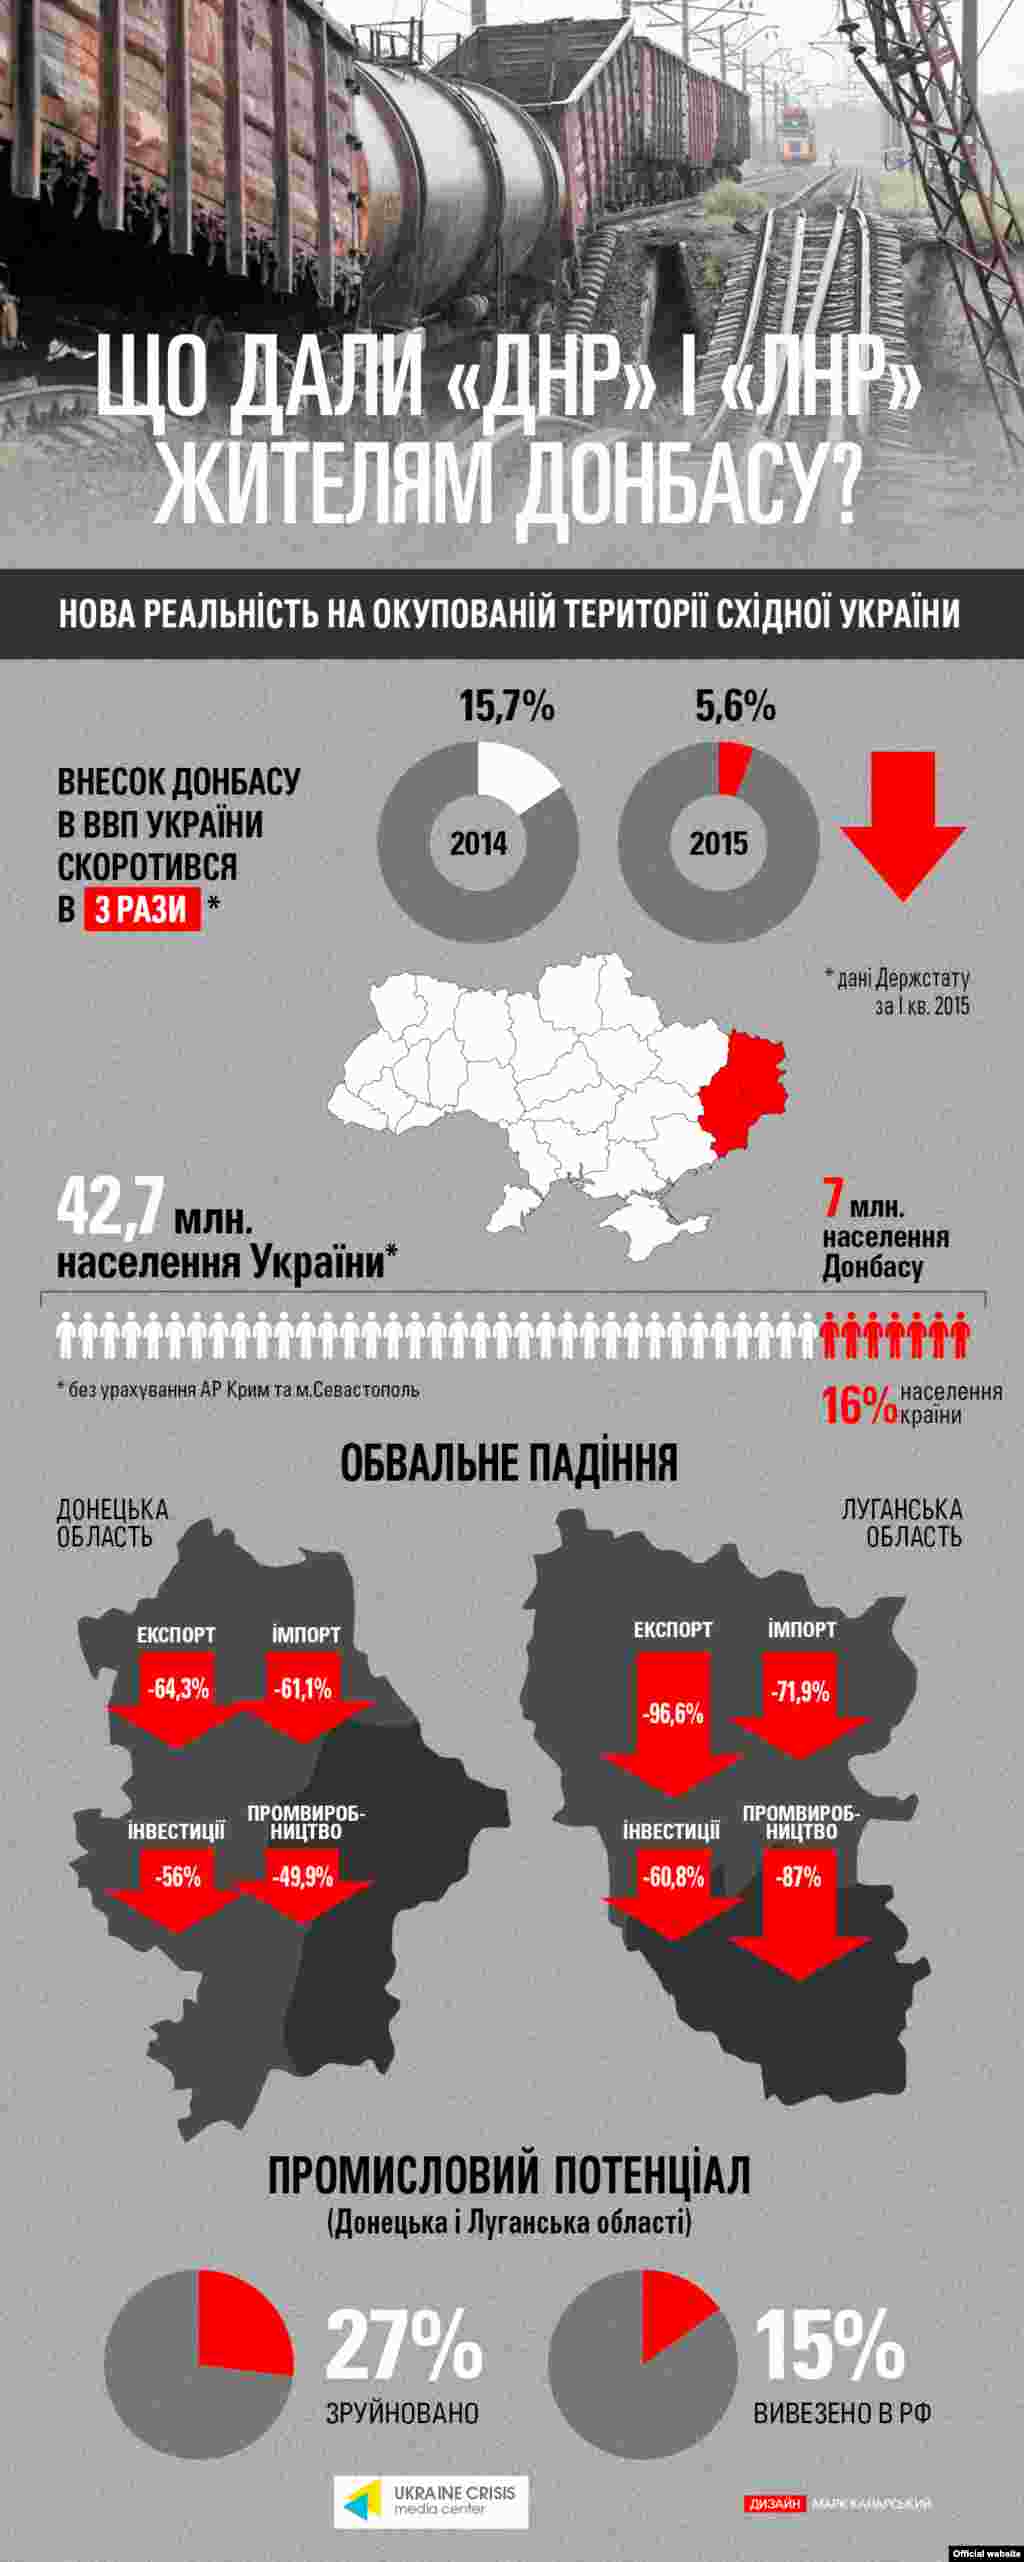 Інфографіка&nbsp;Українського кризового медіа-центру (www.uacrisis.org/ua​)​